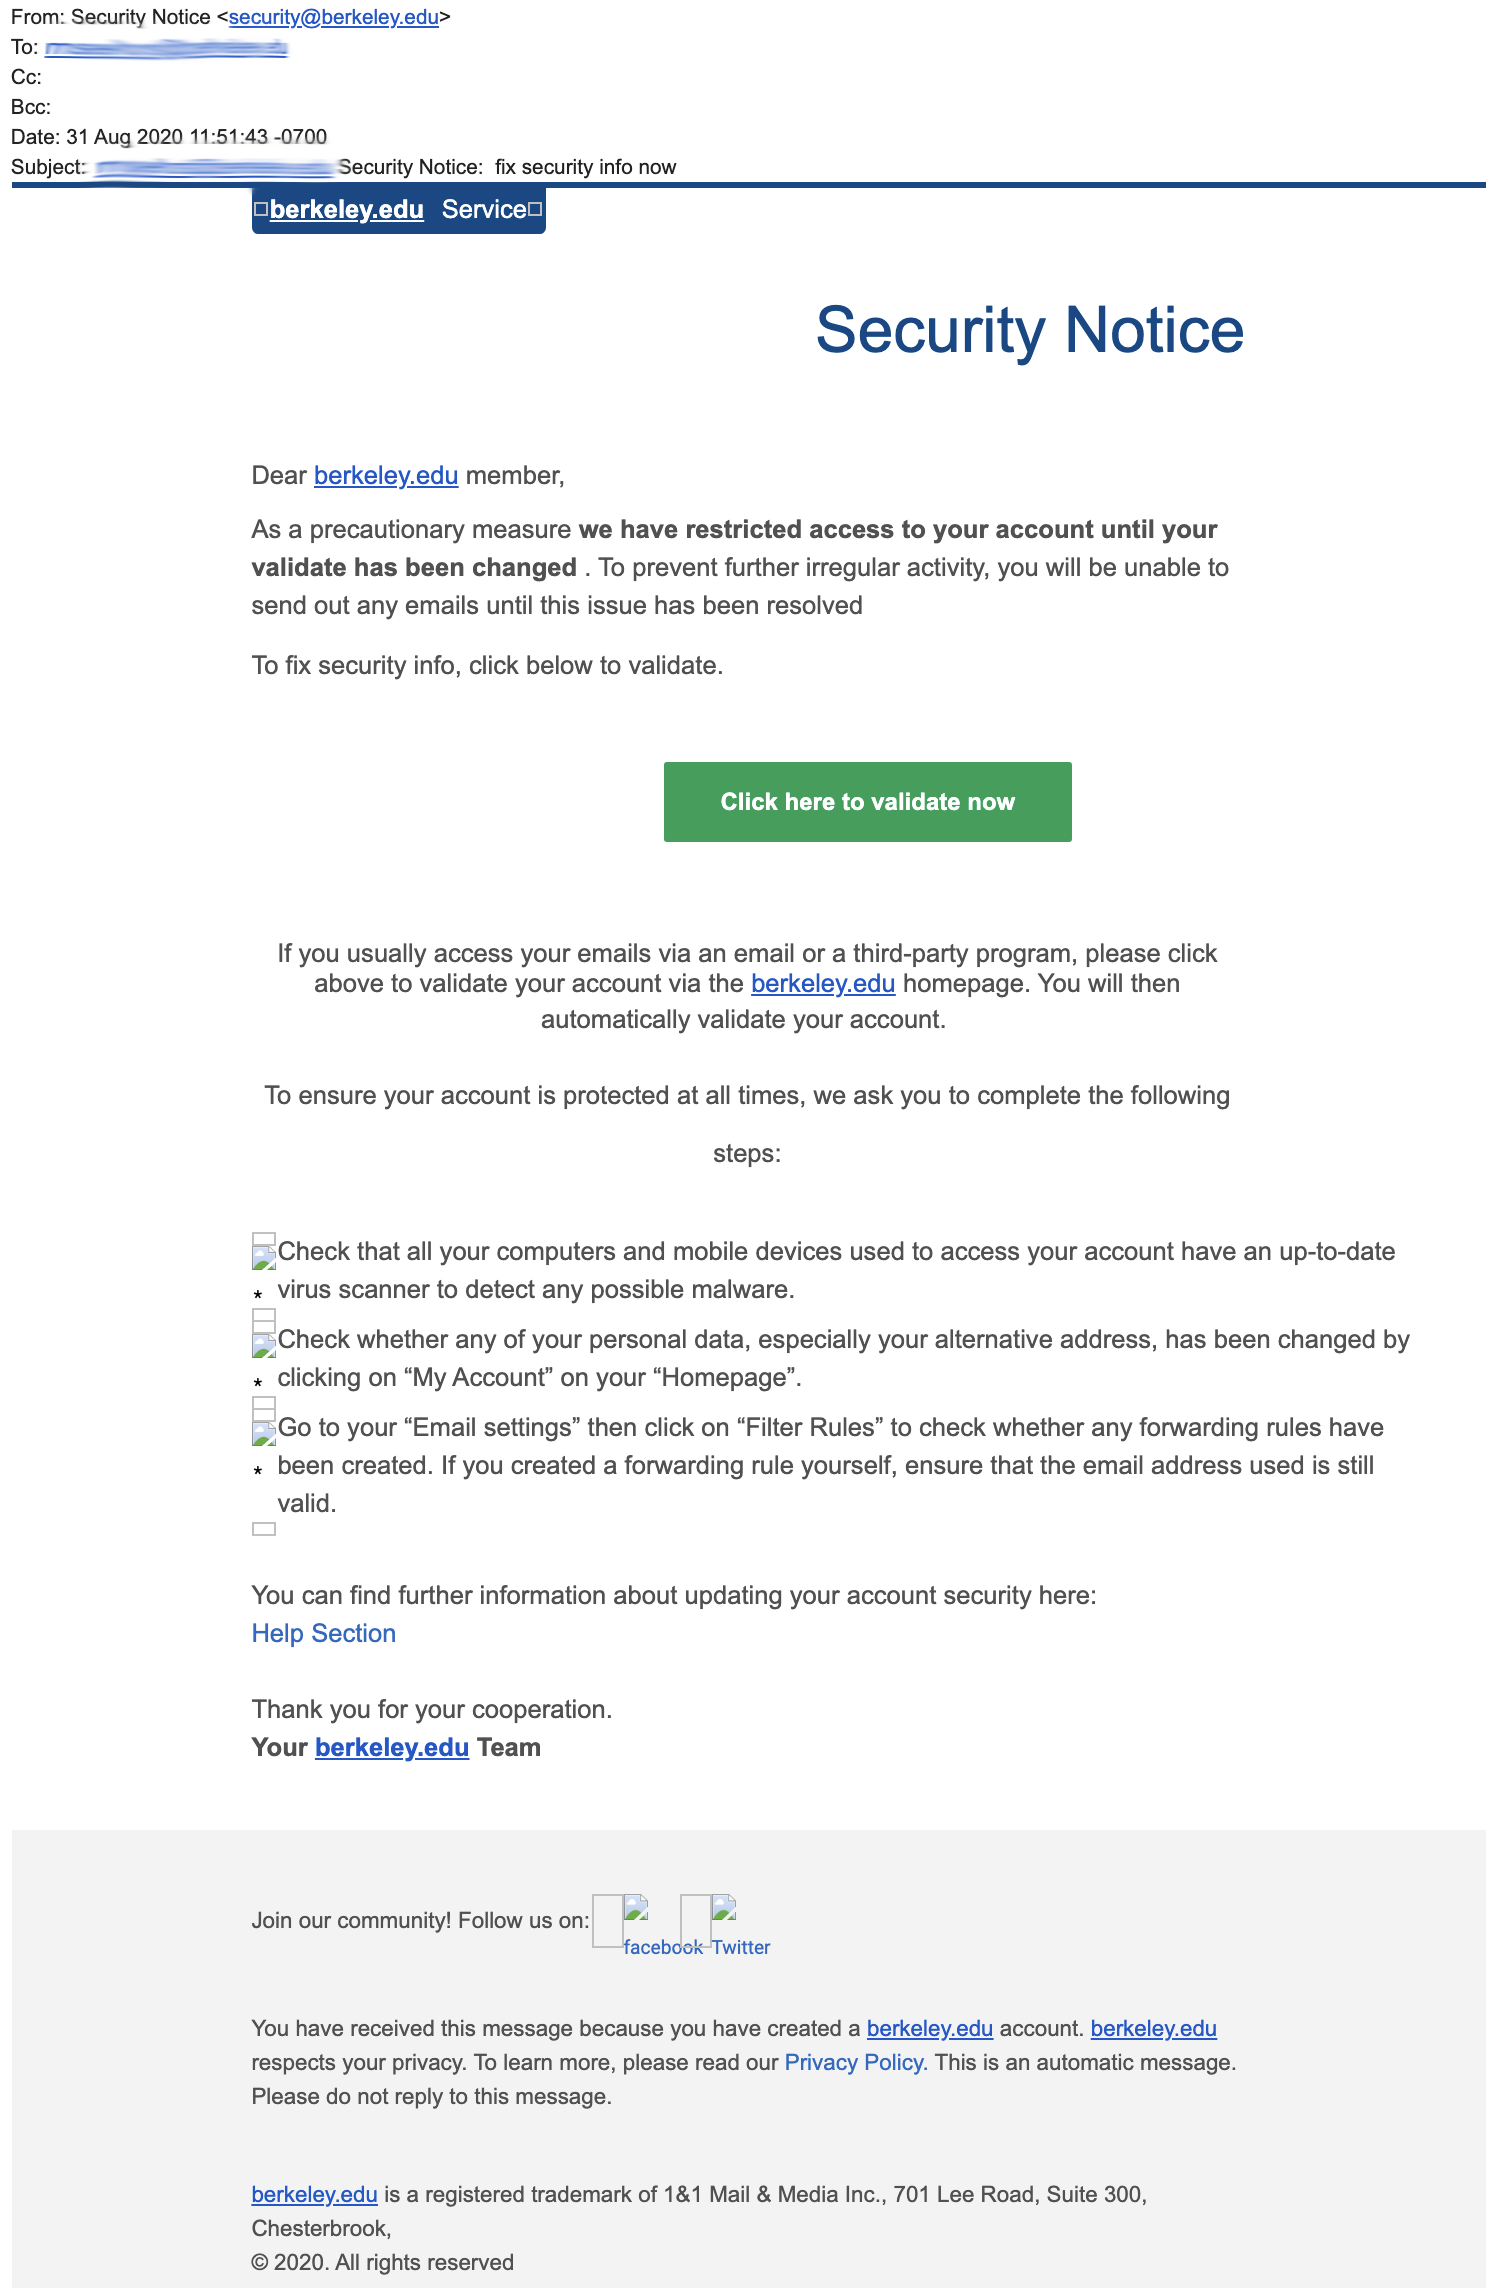 Fake phishing email